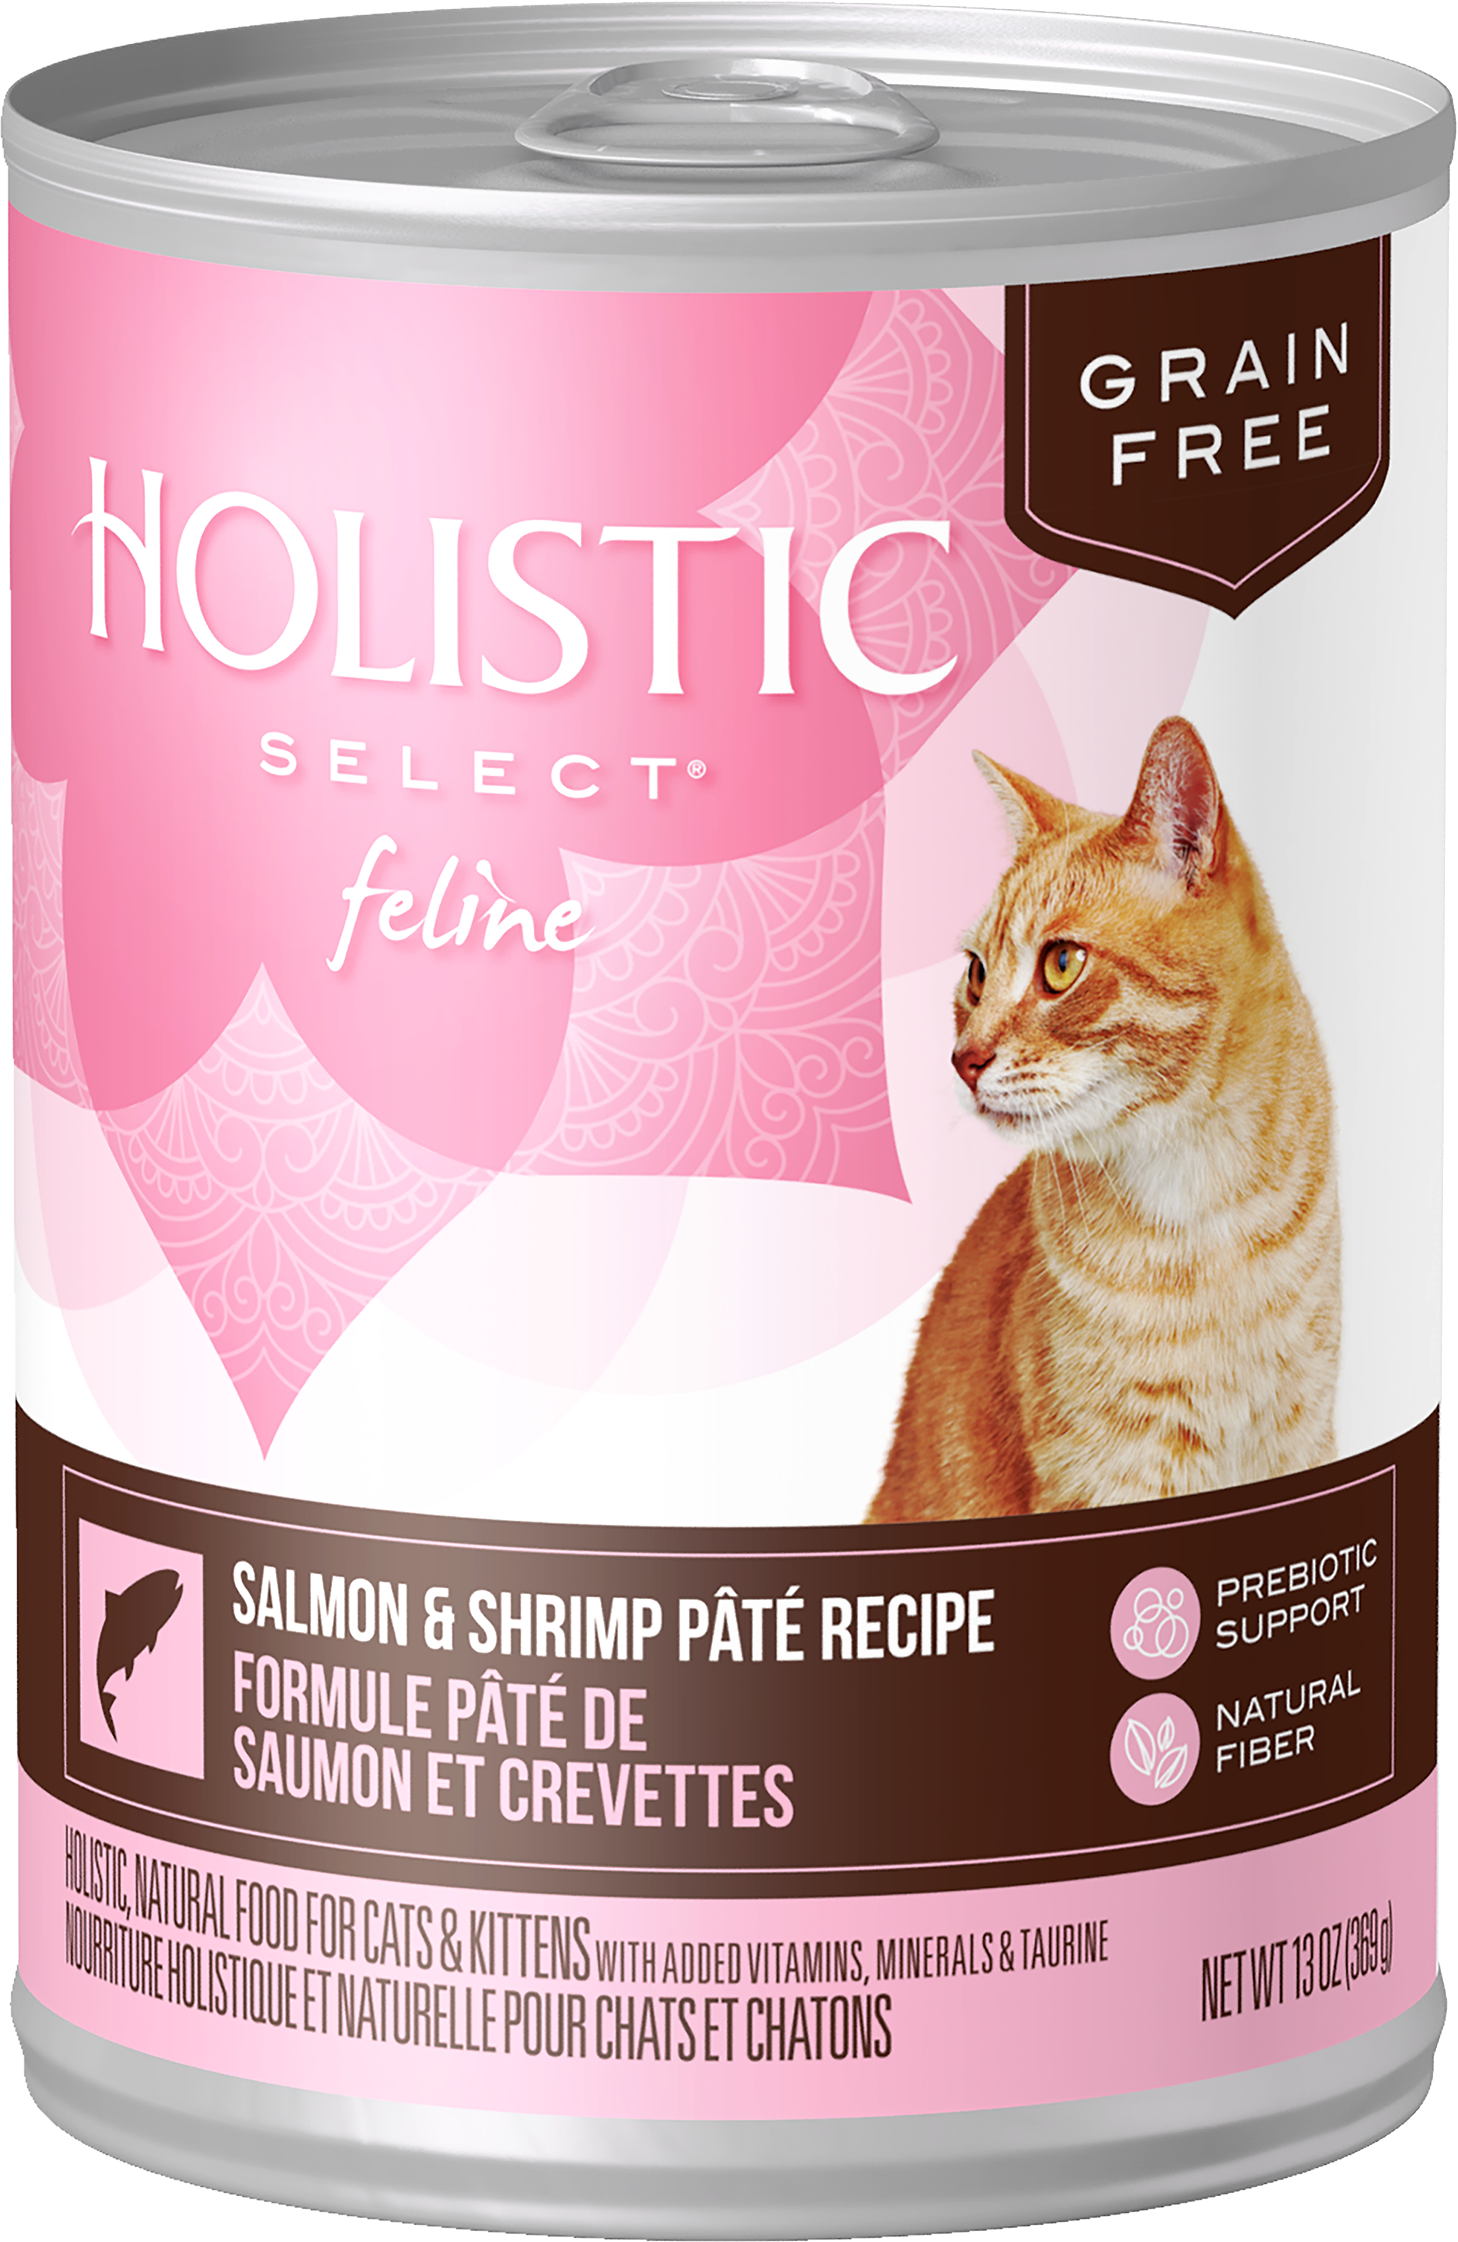 Grain Free Salmon & Shrimp Pâté Recipe product packaging image 1